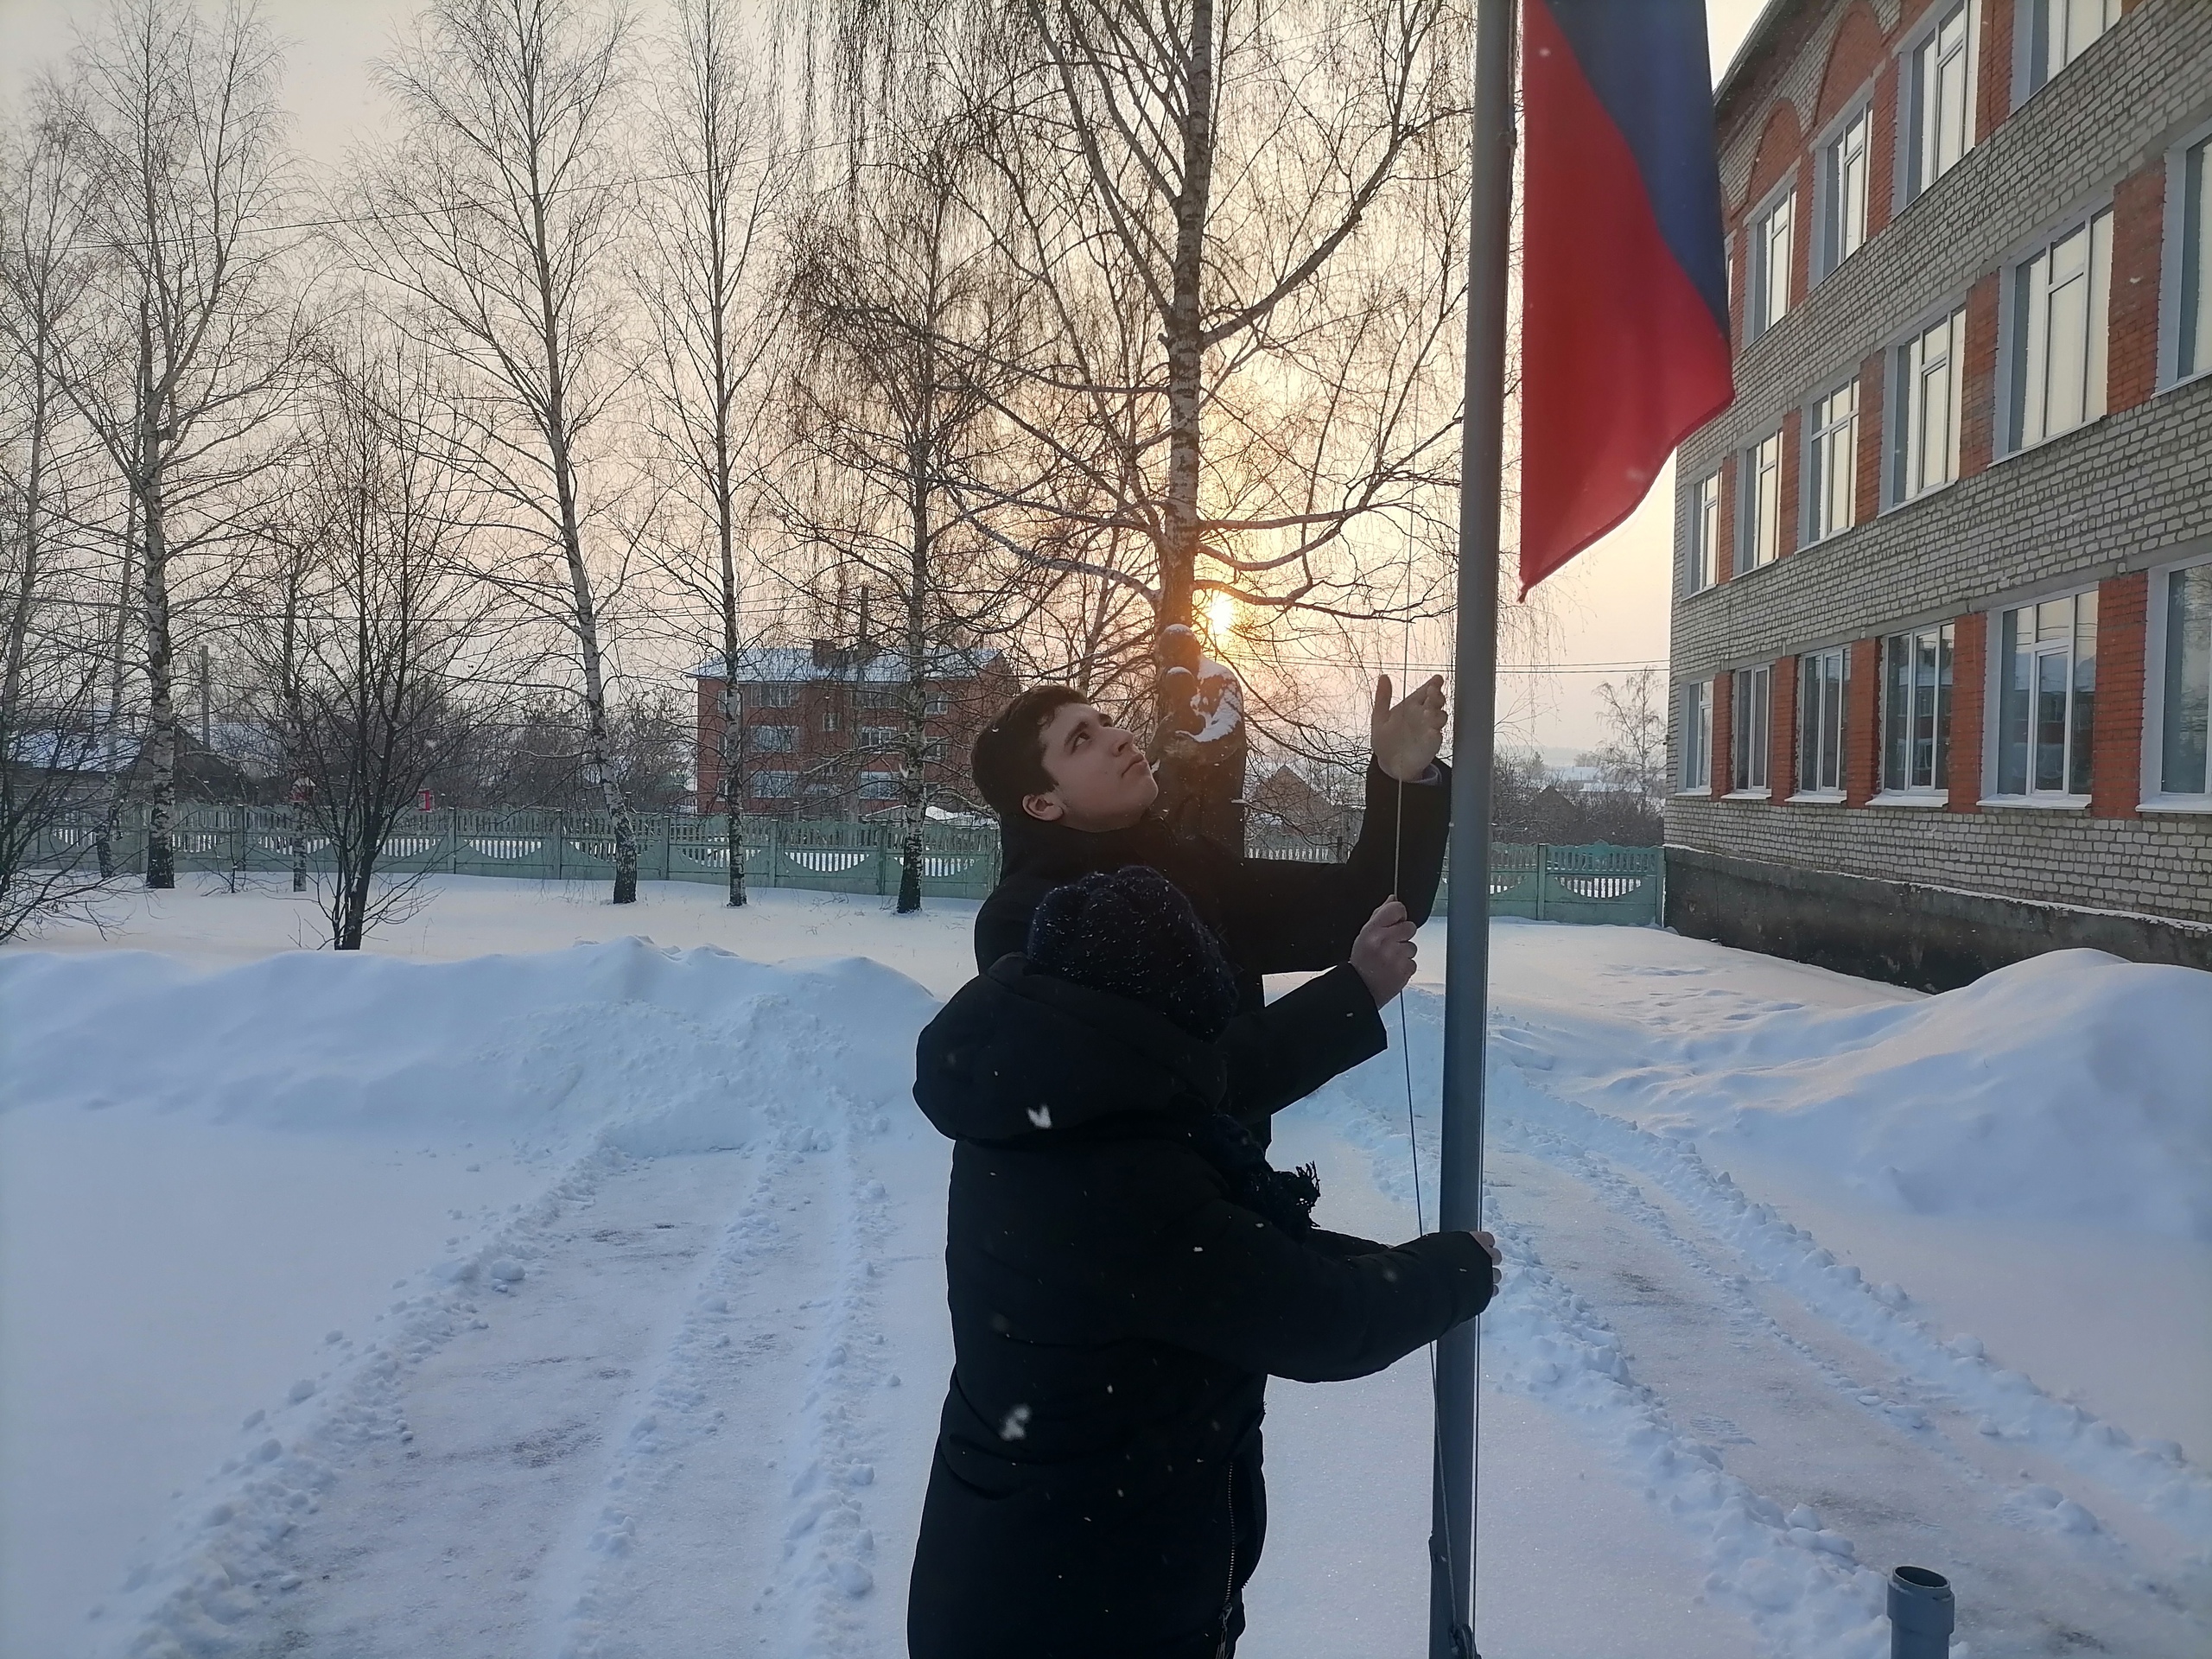 Поднятие флага на улице школьниками зимой. МБОУ Кочкуровская СОШ Дубенского района. Февраль снег в городе и флаг РФ.